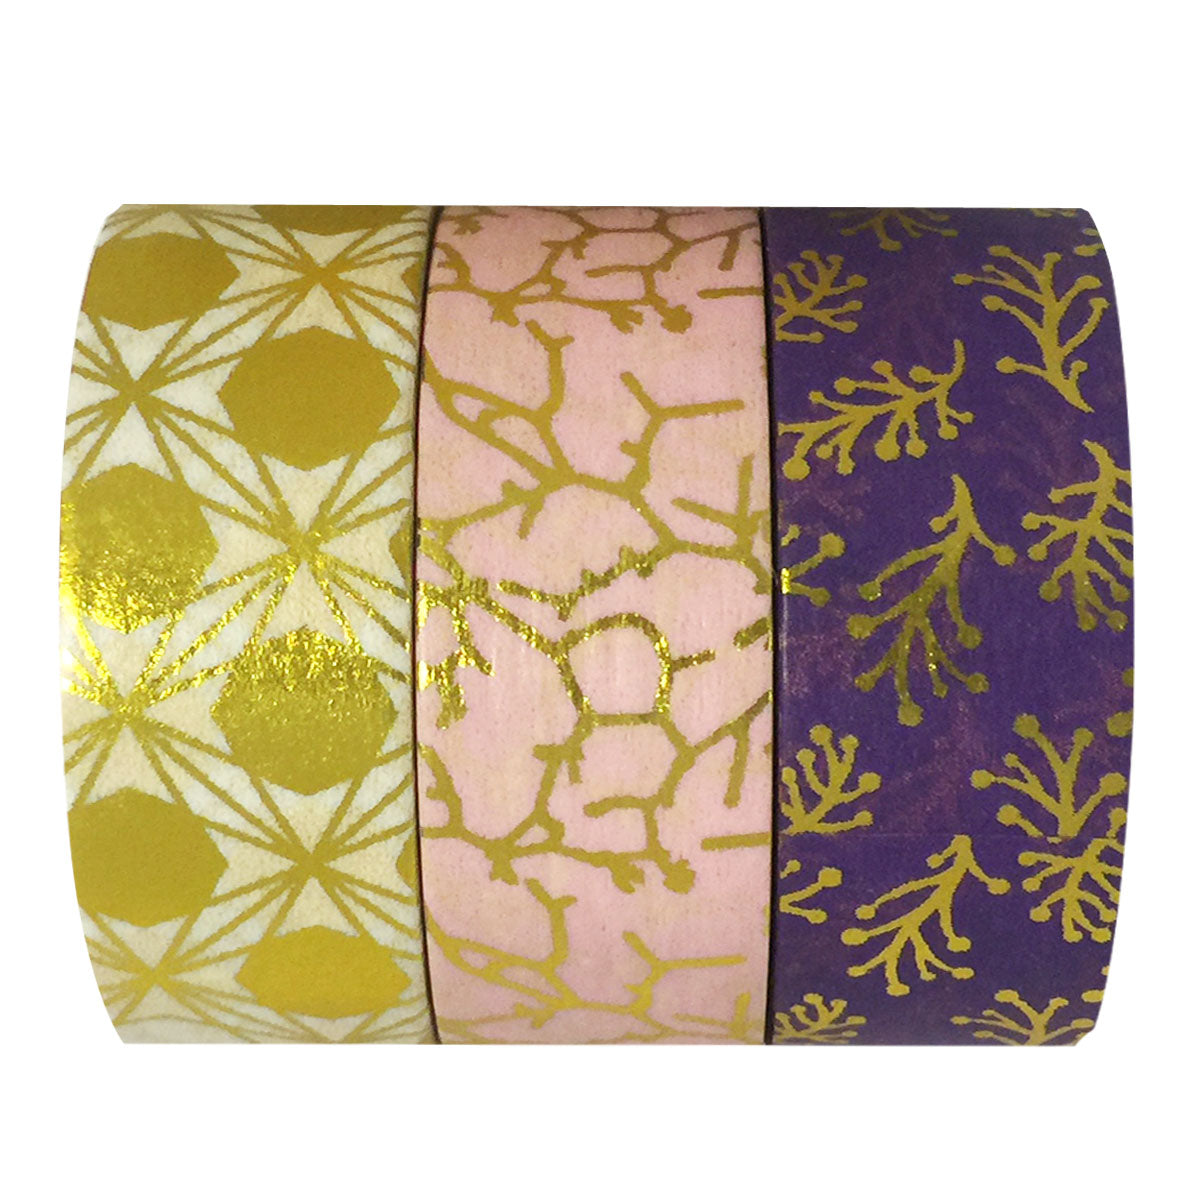 Wrapables Washi Masking Tape (Set of 3)